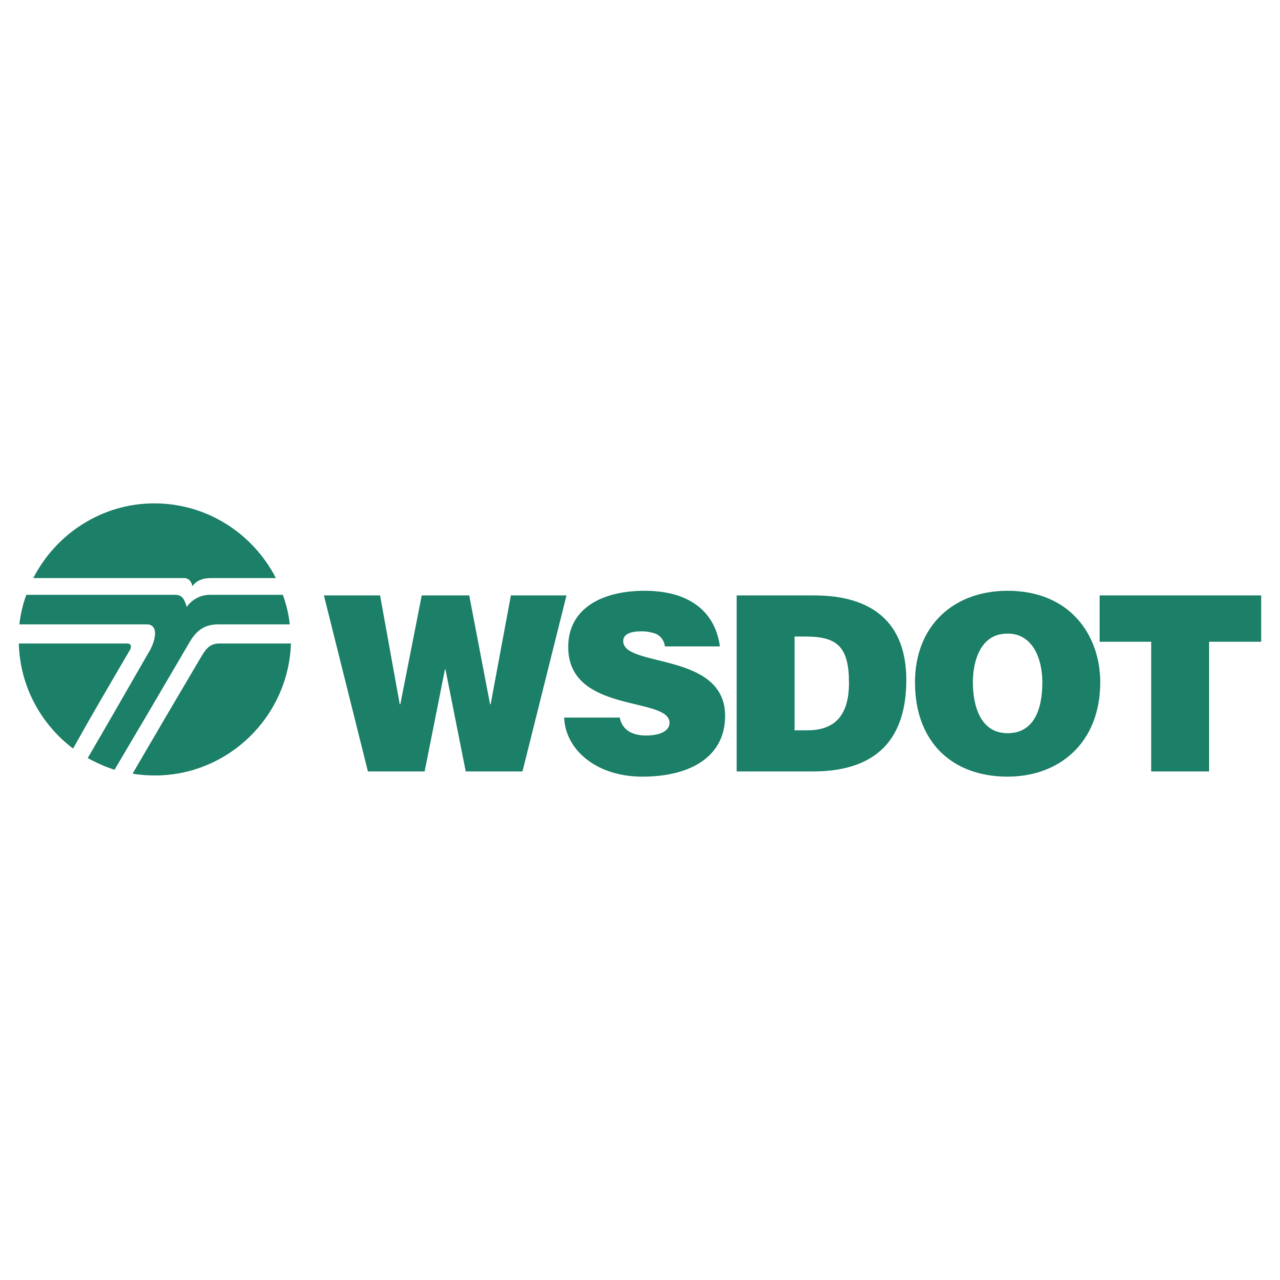 Download WSDOT Logo PNG and Vector (PDF, SVG, Ai, EPS) Free